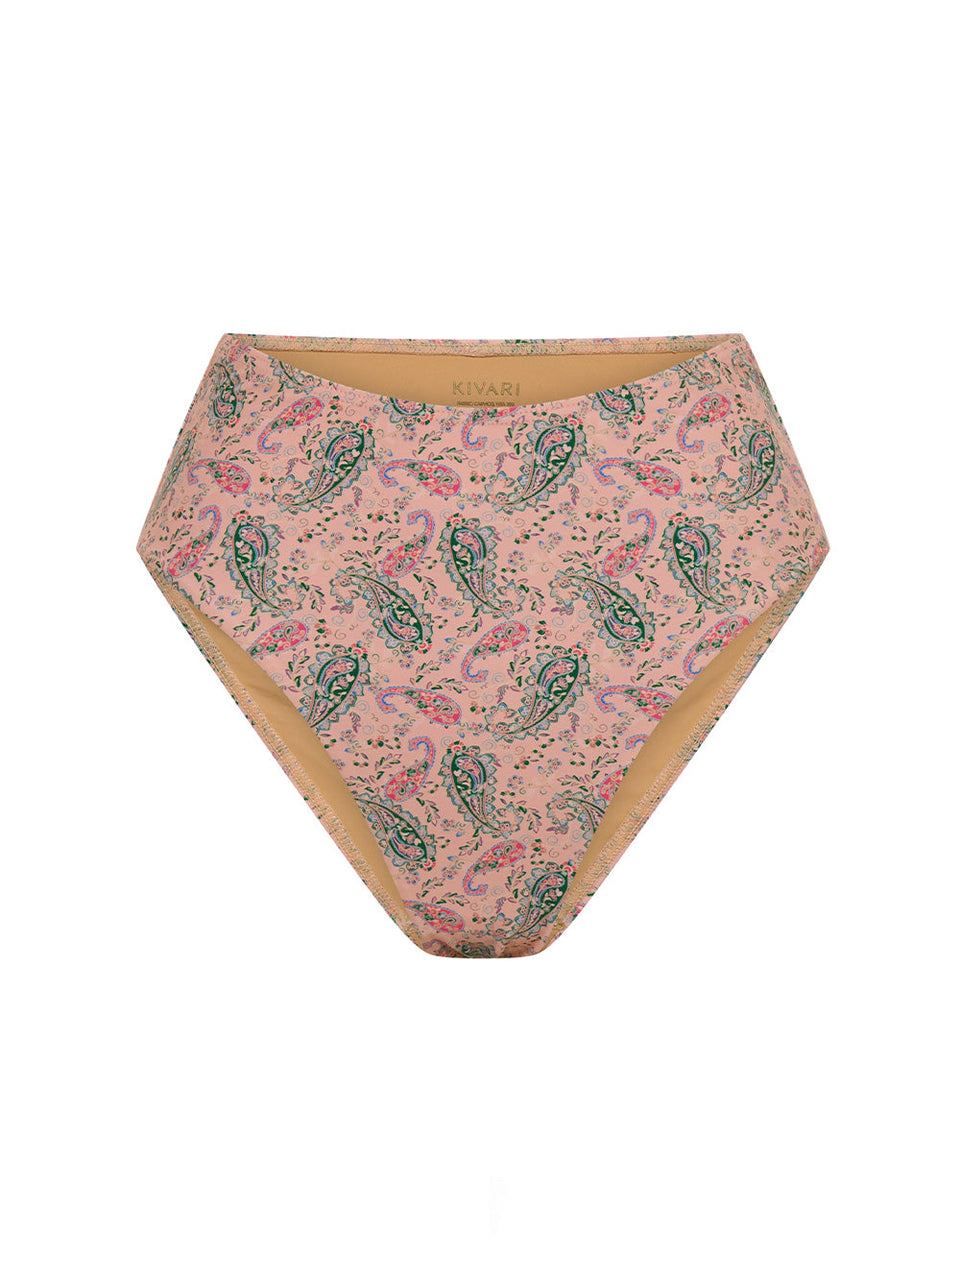 Isha High Waisted Bikini Bottom KIVARI | Pink paisley bikini bottom